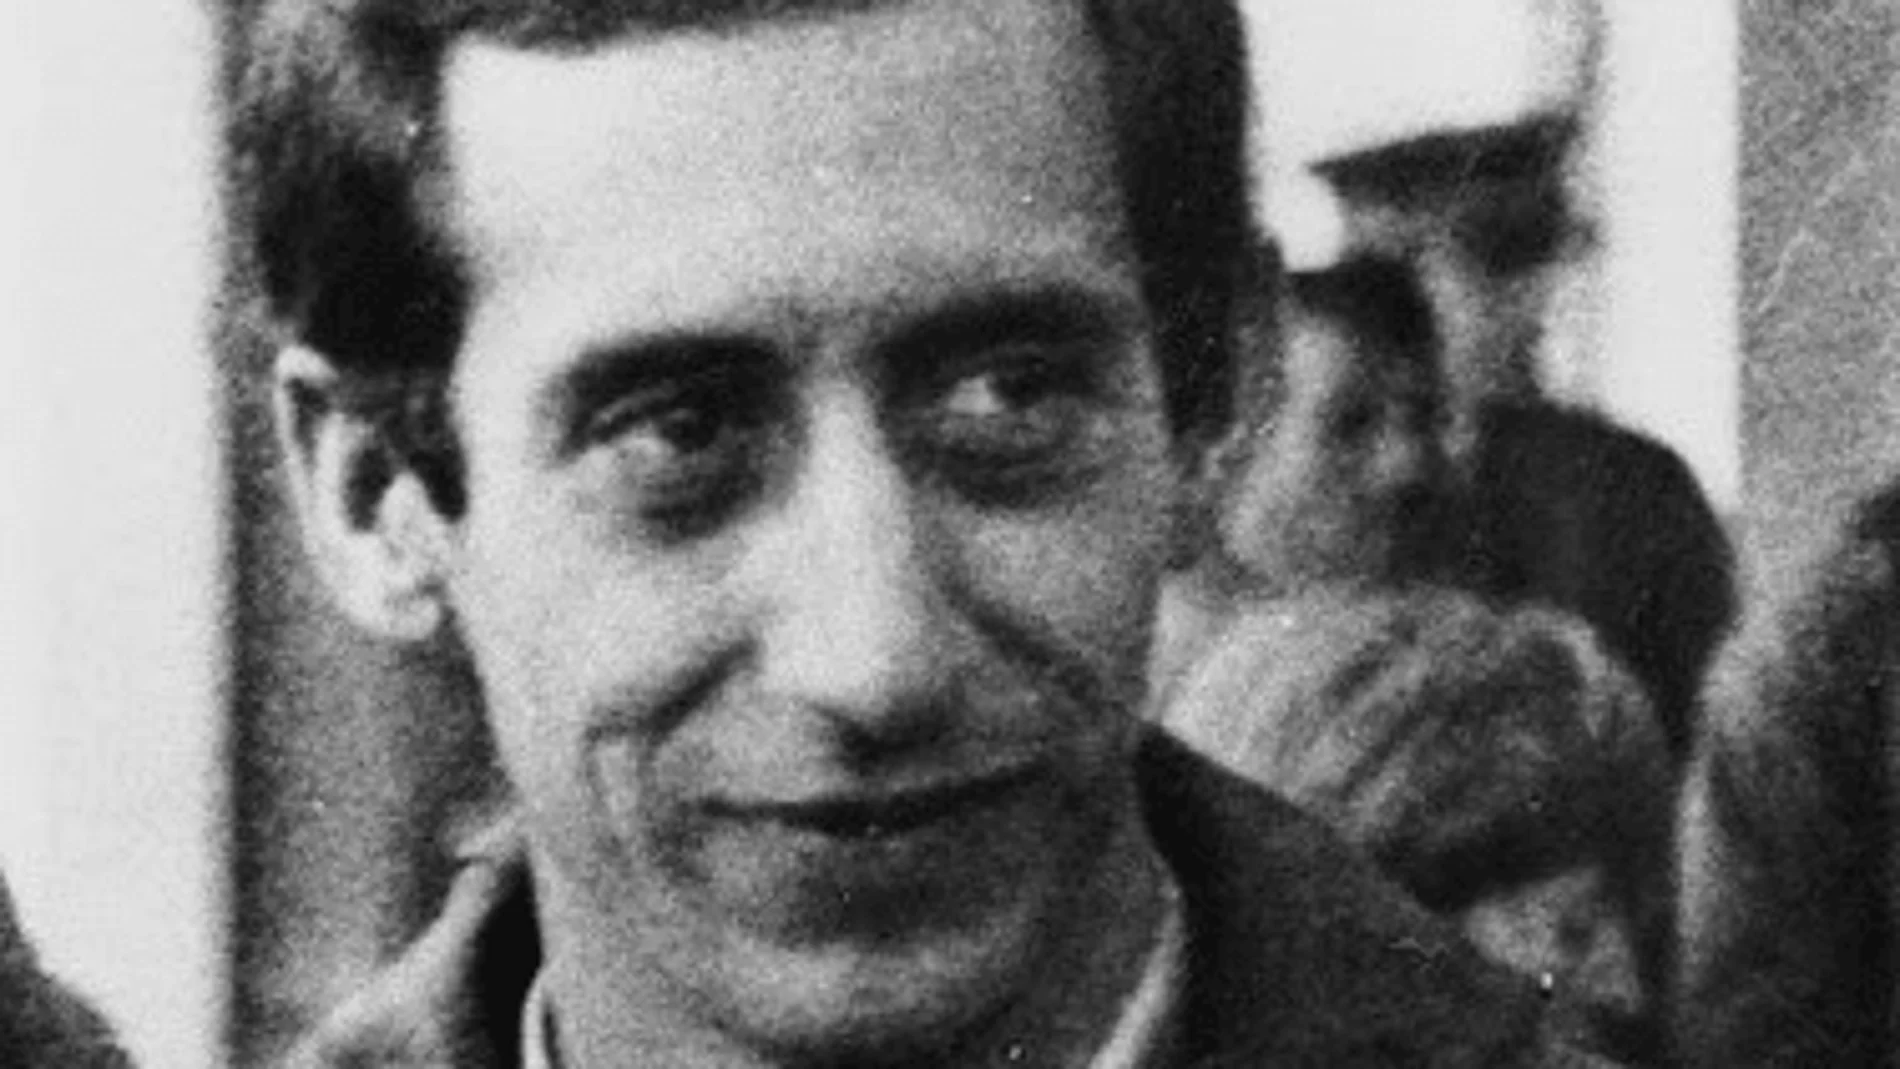 José Miguel Beñarán Ordeñana, alias "Argala", el etarra que accionó el explosivo contra Carrero Blanco